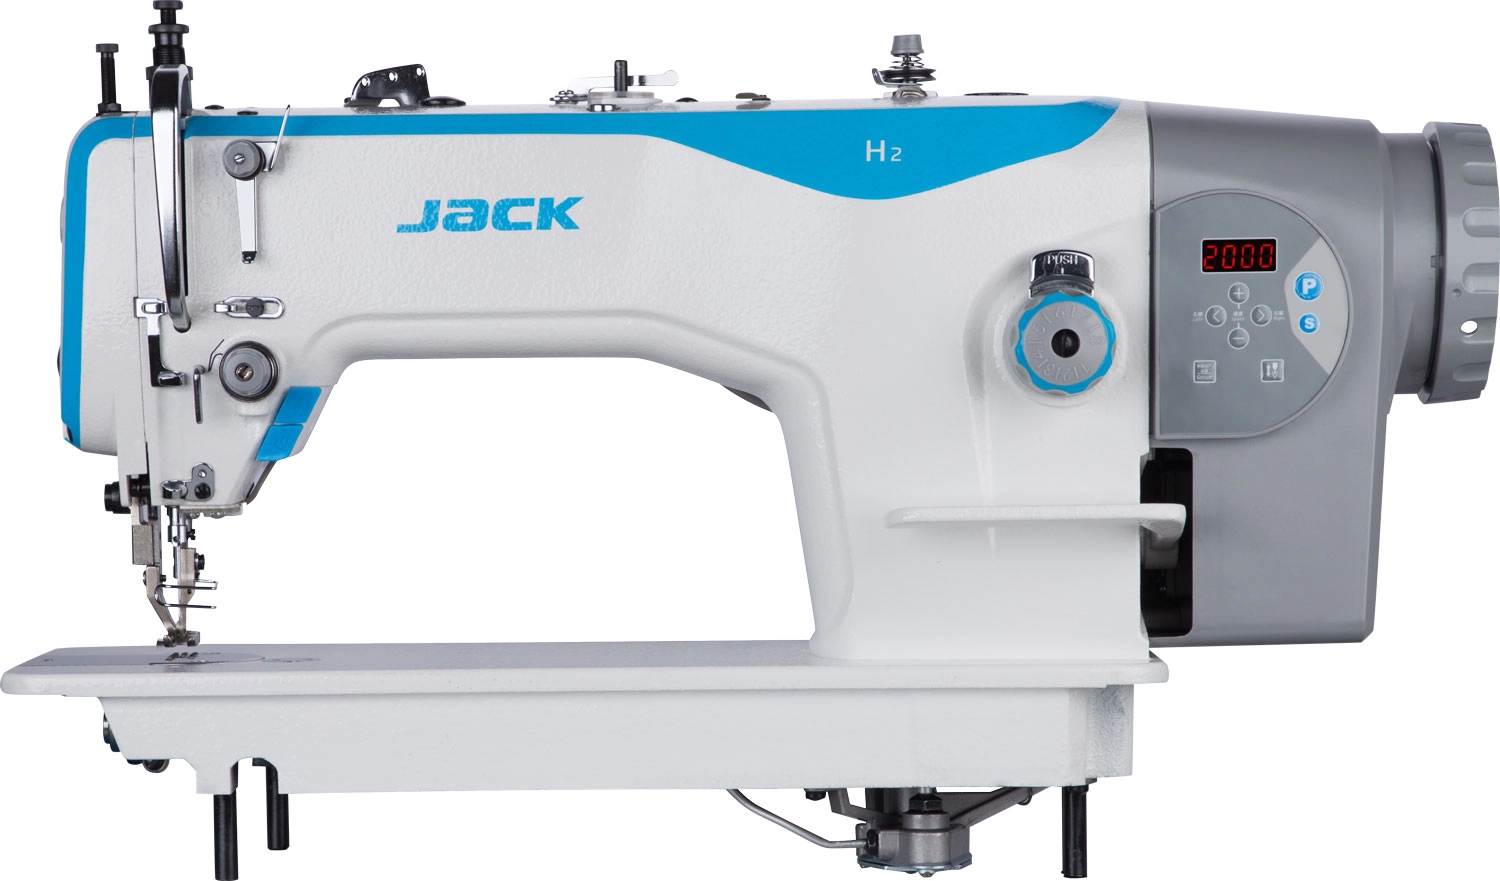 Jack-H2A-CZ ipari gyorsvarrógép